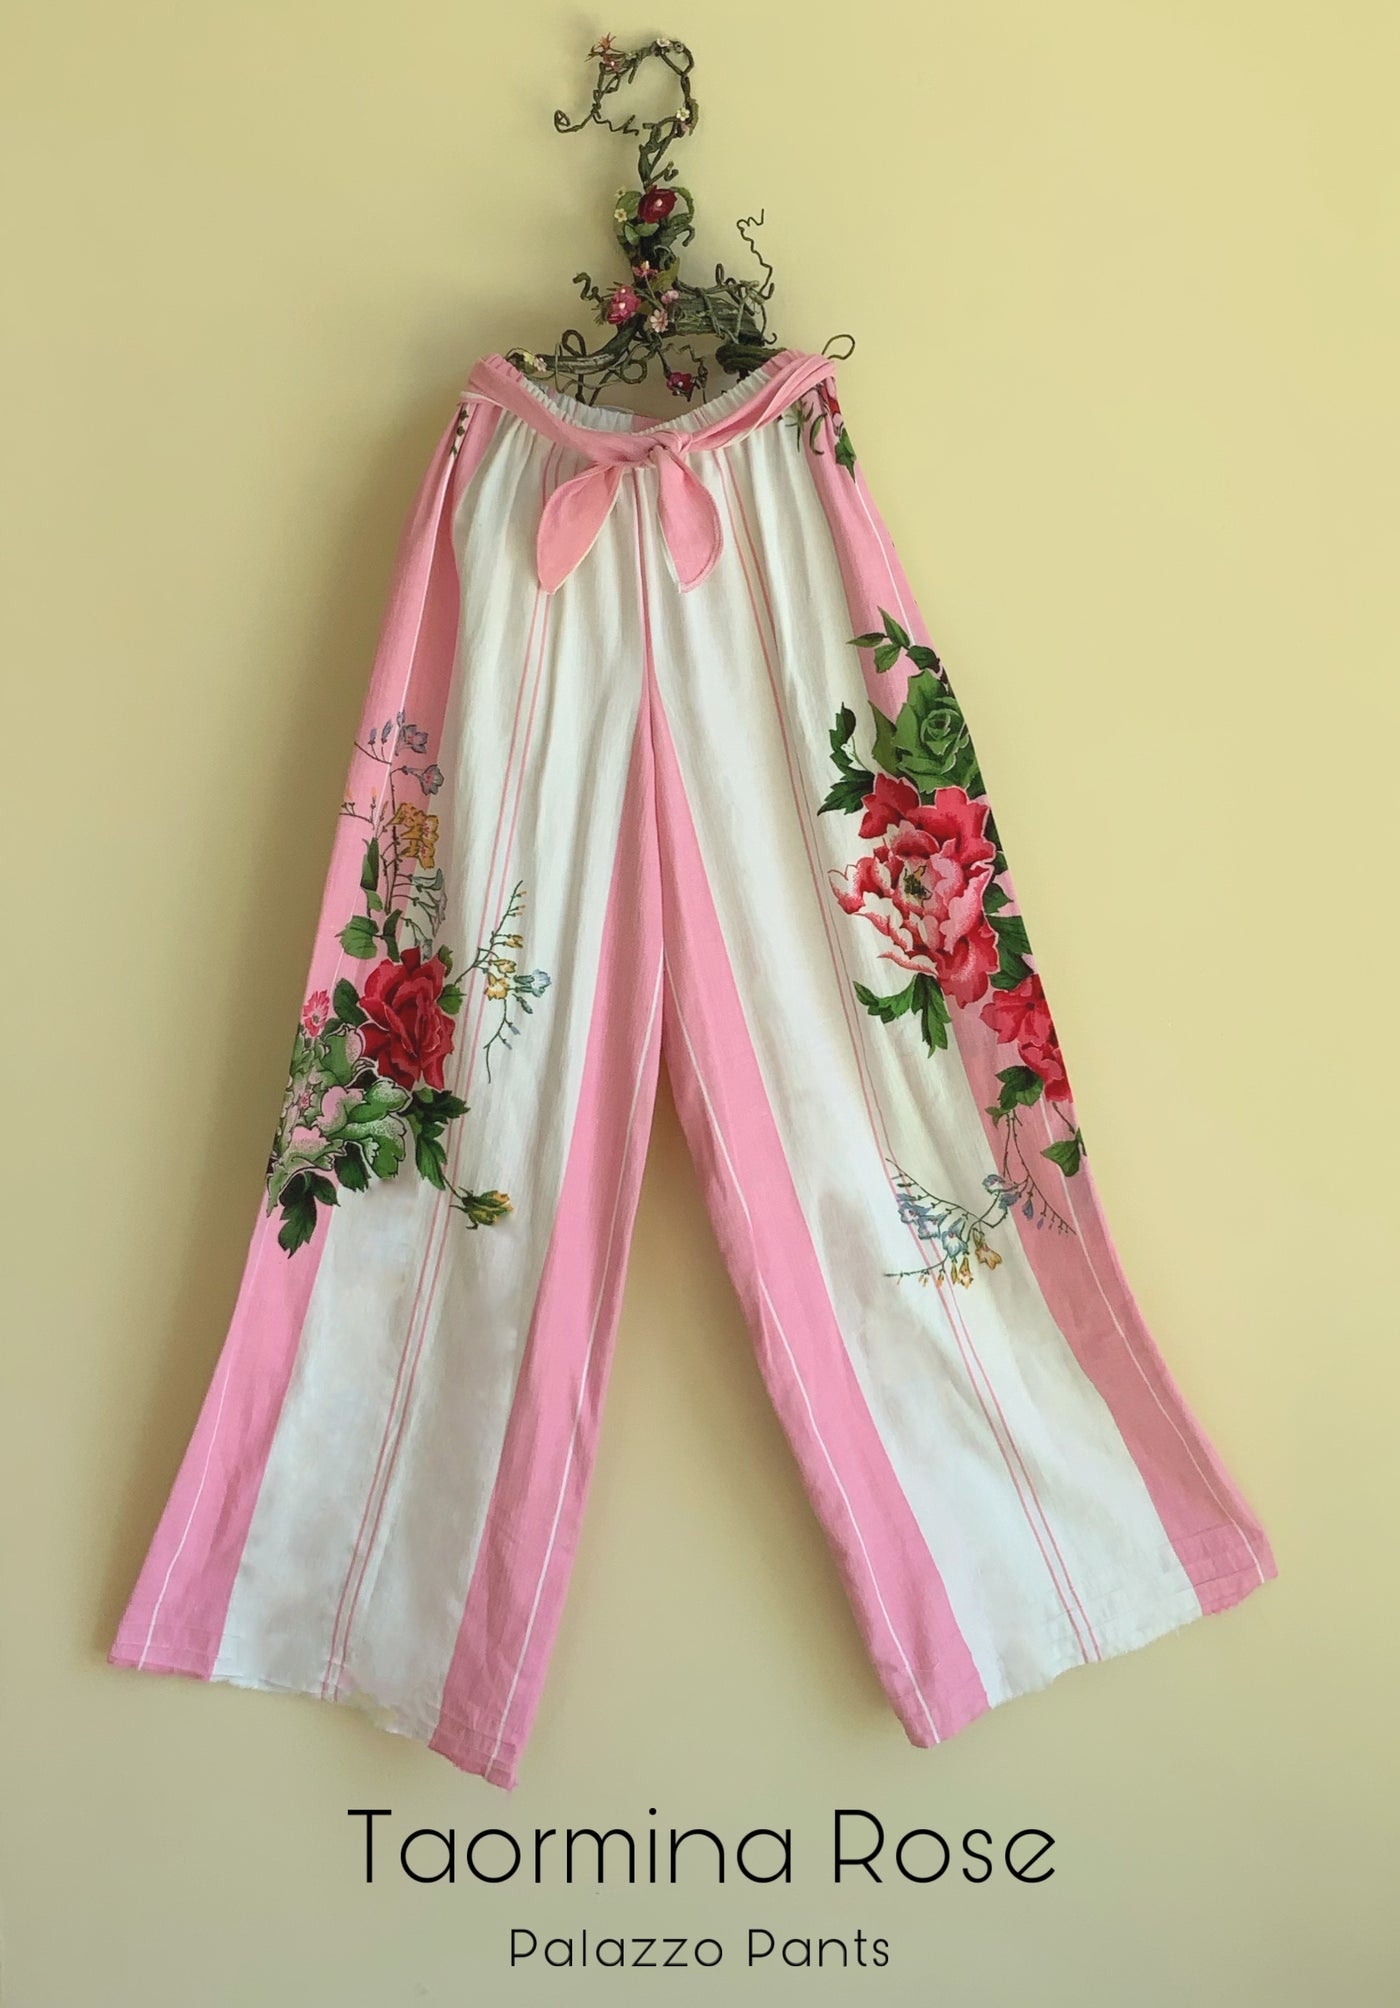 Taormina Rose Palazzo Pants and Skirt